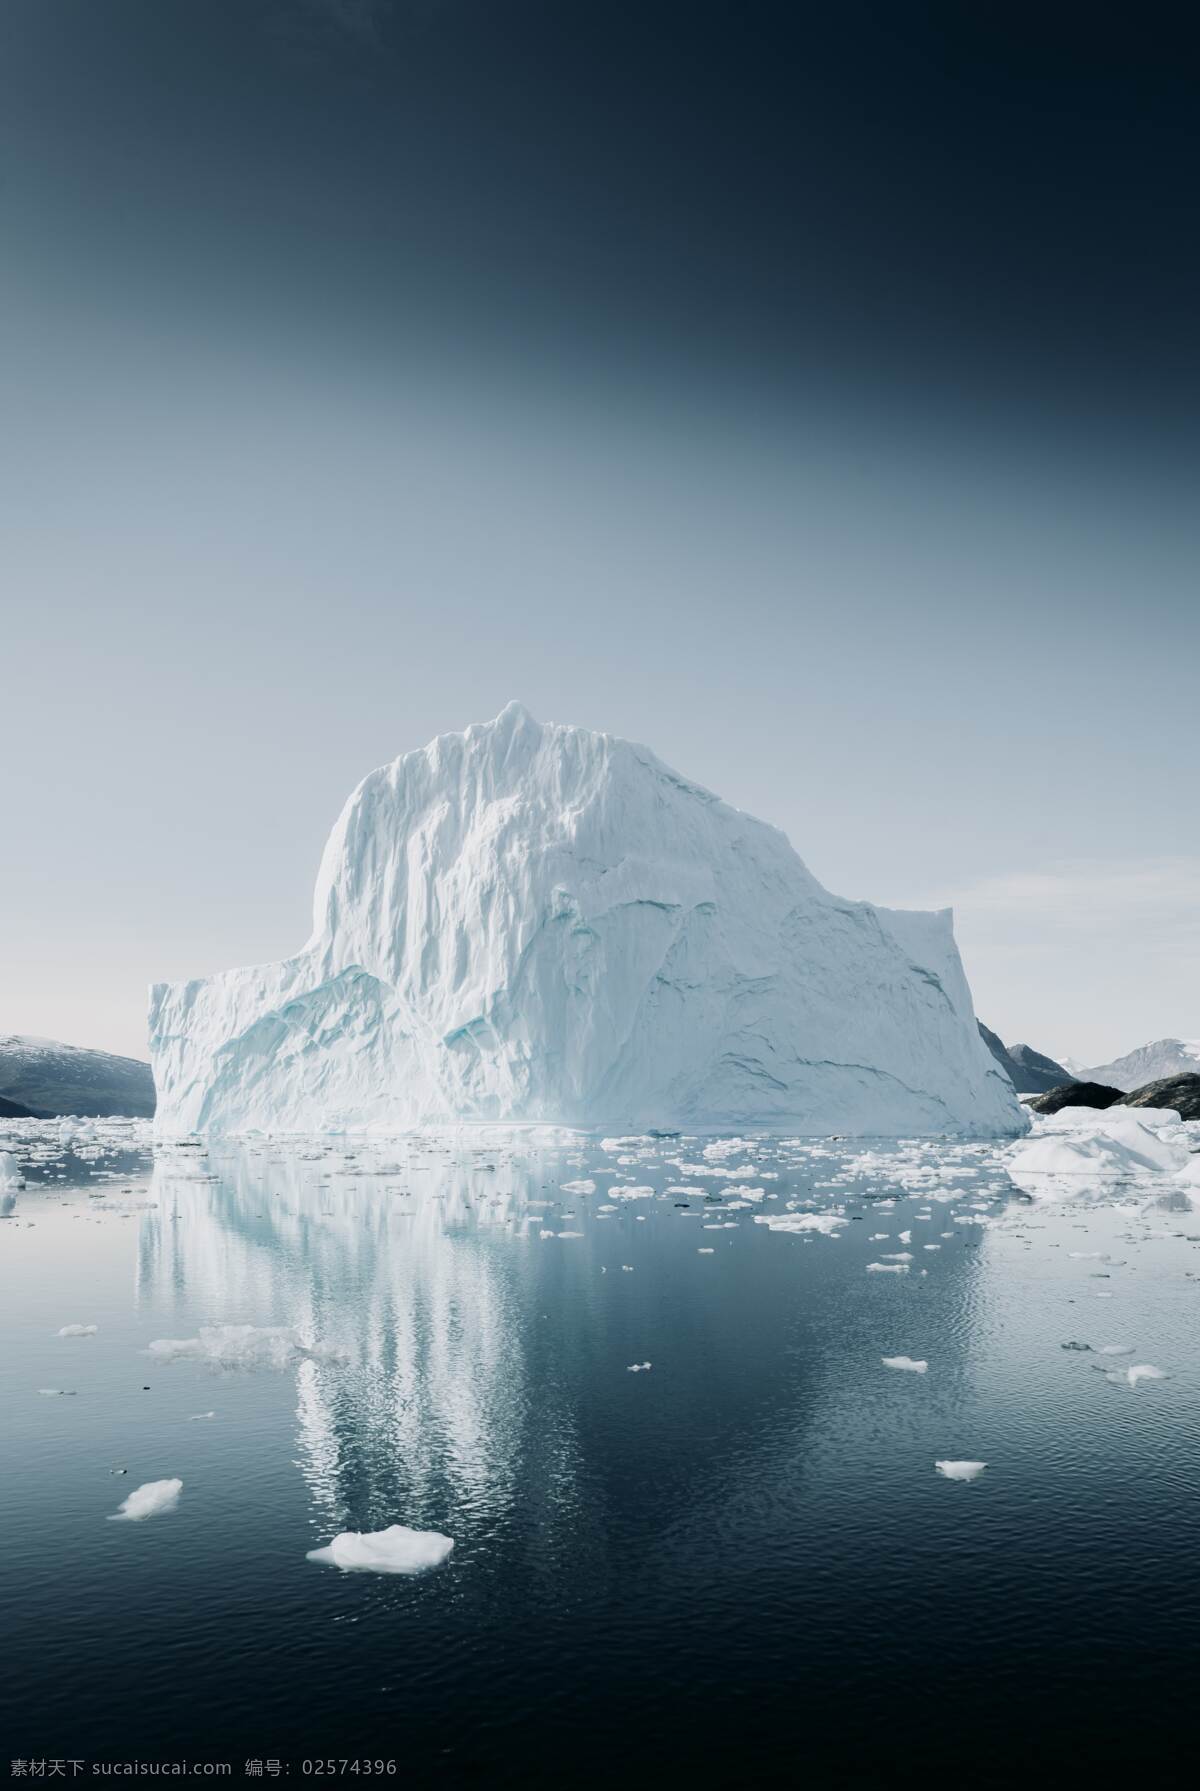 冰山 山峰 ps 融化 全球变暖 碎块 海水 黑色 绝望 主体 白色 倒影 北极 南极 碎裂 自然景观 自然风景